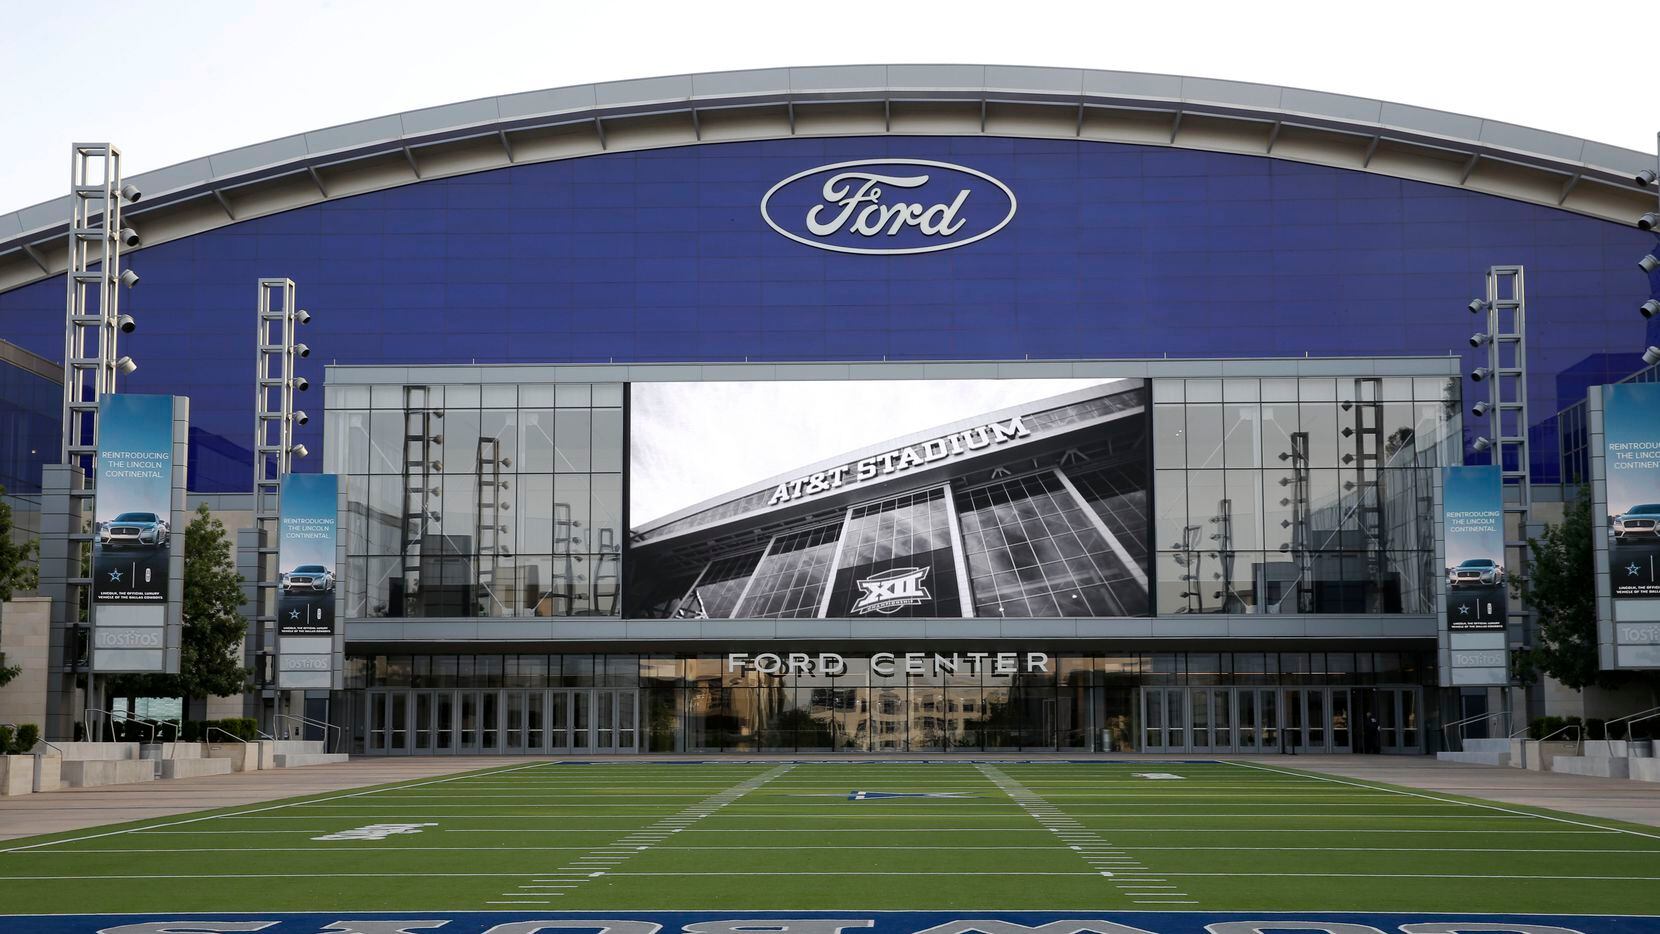 La pantalla gigante del Tostitos Championship Plaza pasará el juego de Dallas Cowboys vs. Washington Redskins, el domingo.